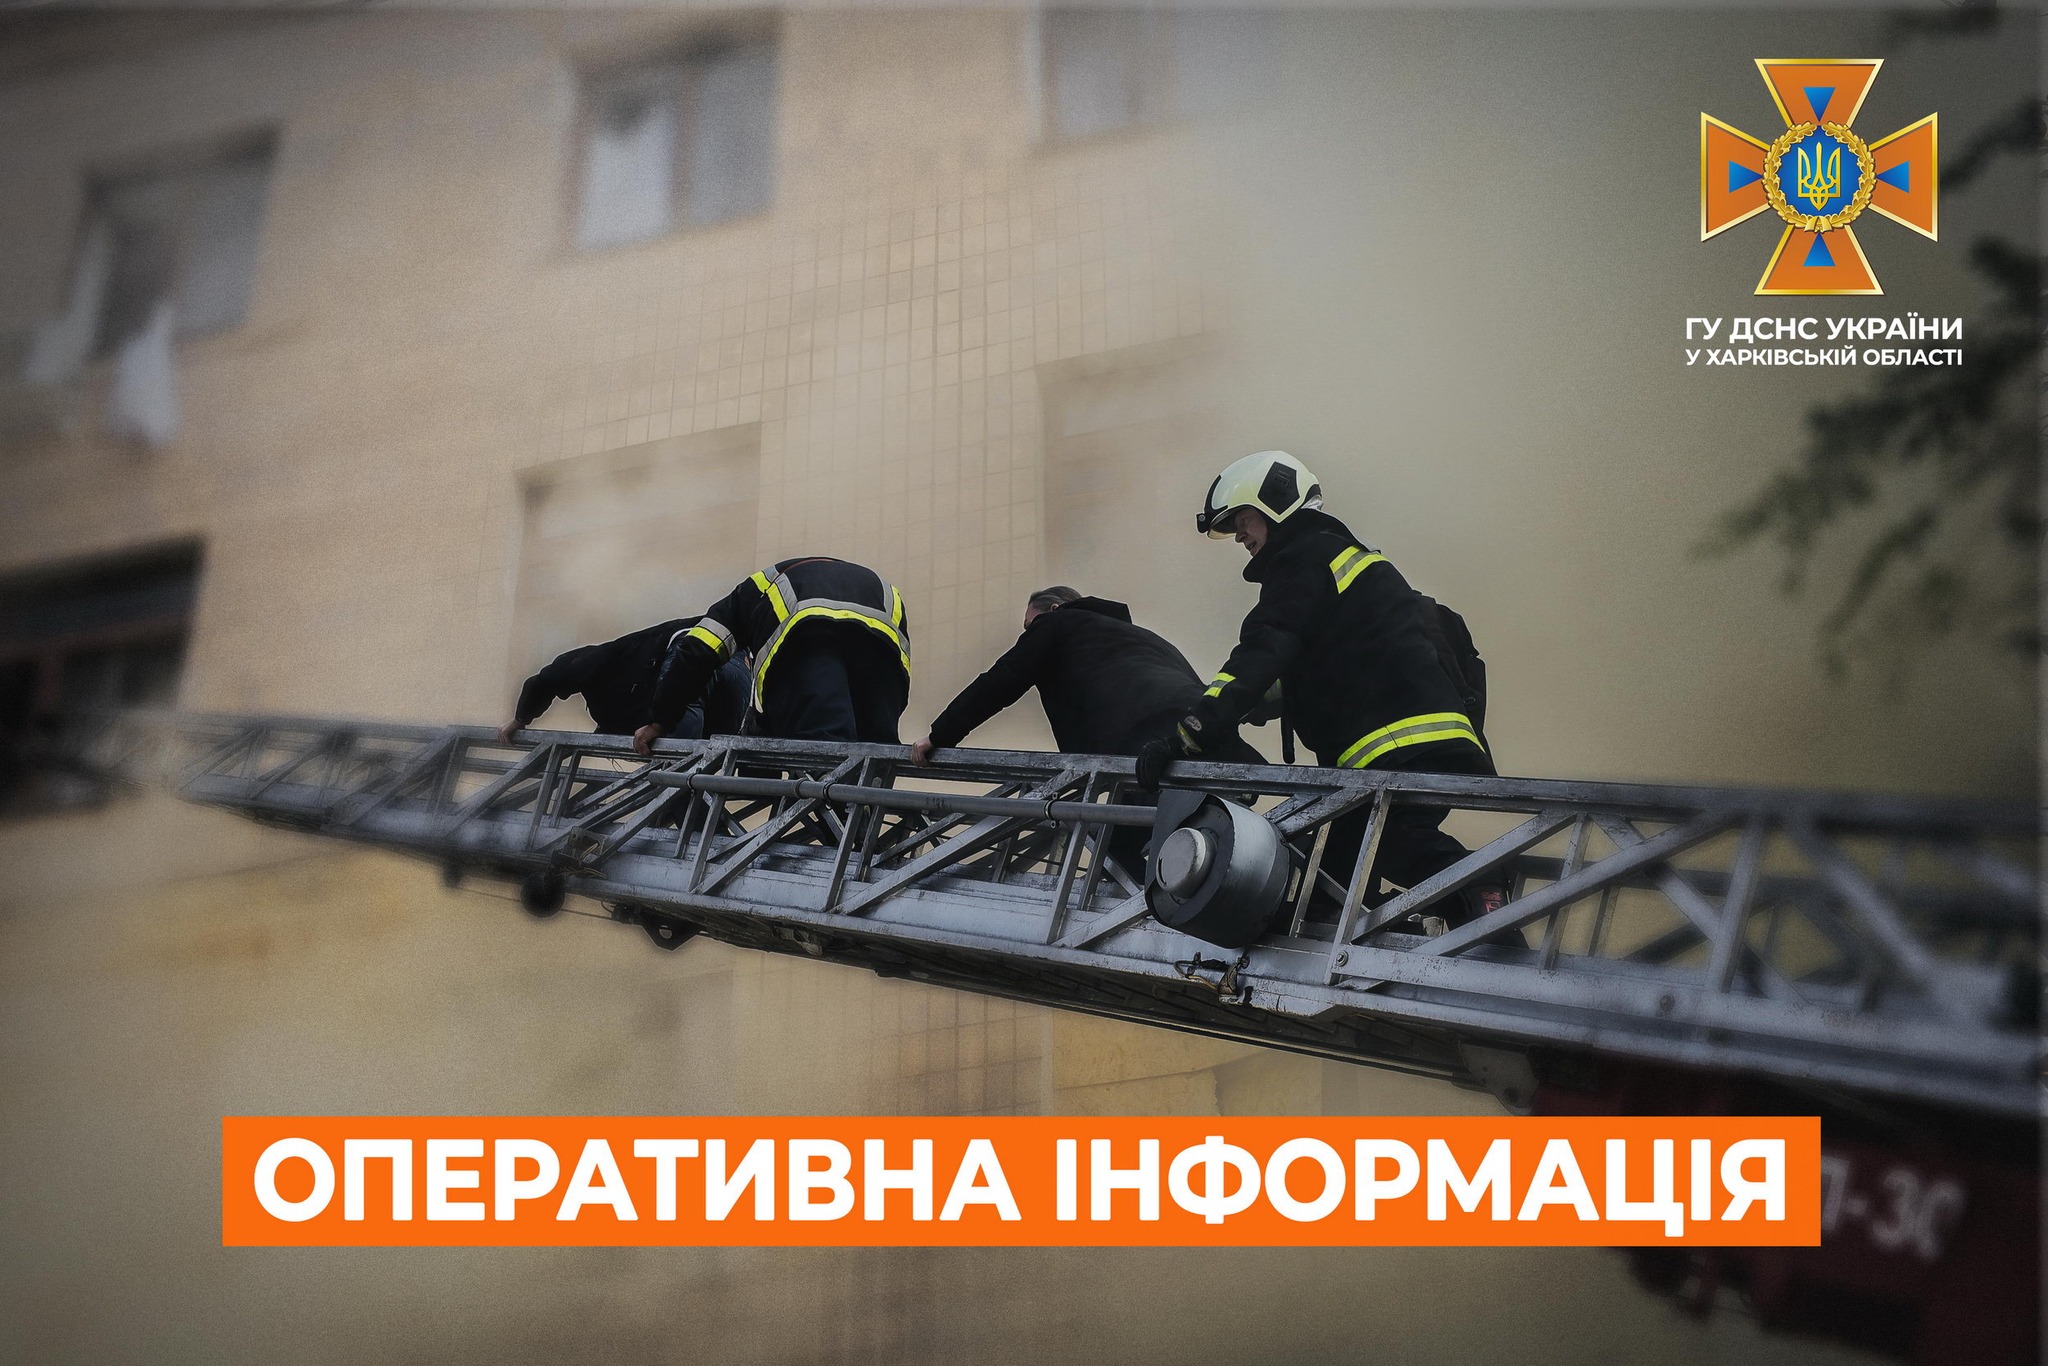 Пожилой мужчина погиб в Харькове во время пожара – ГСЧС